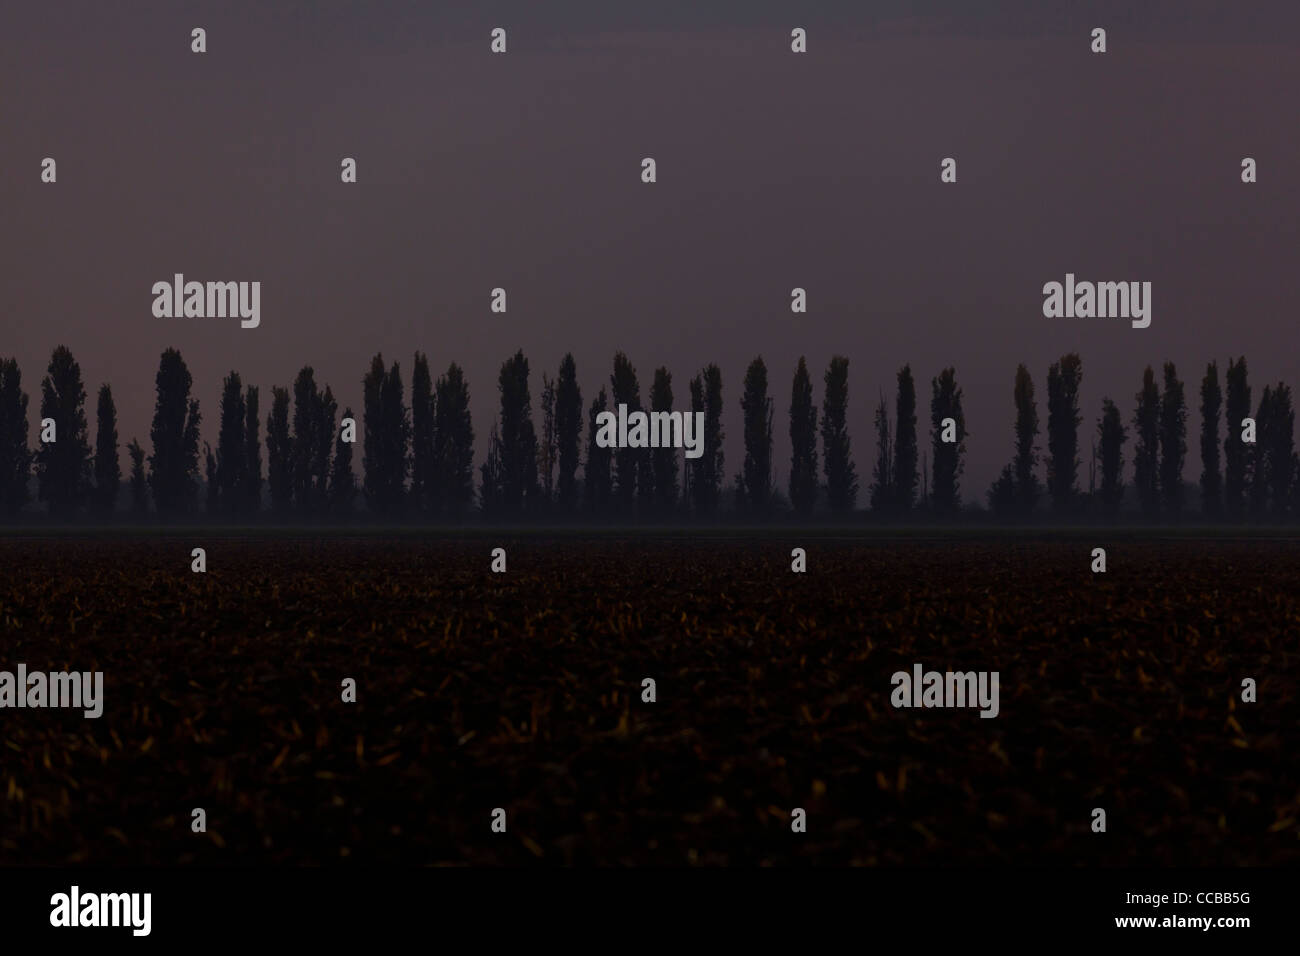 A row of tall thin trees at night Stock Photo